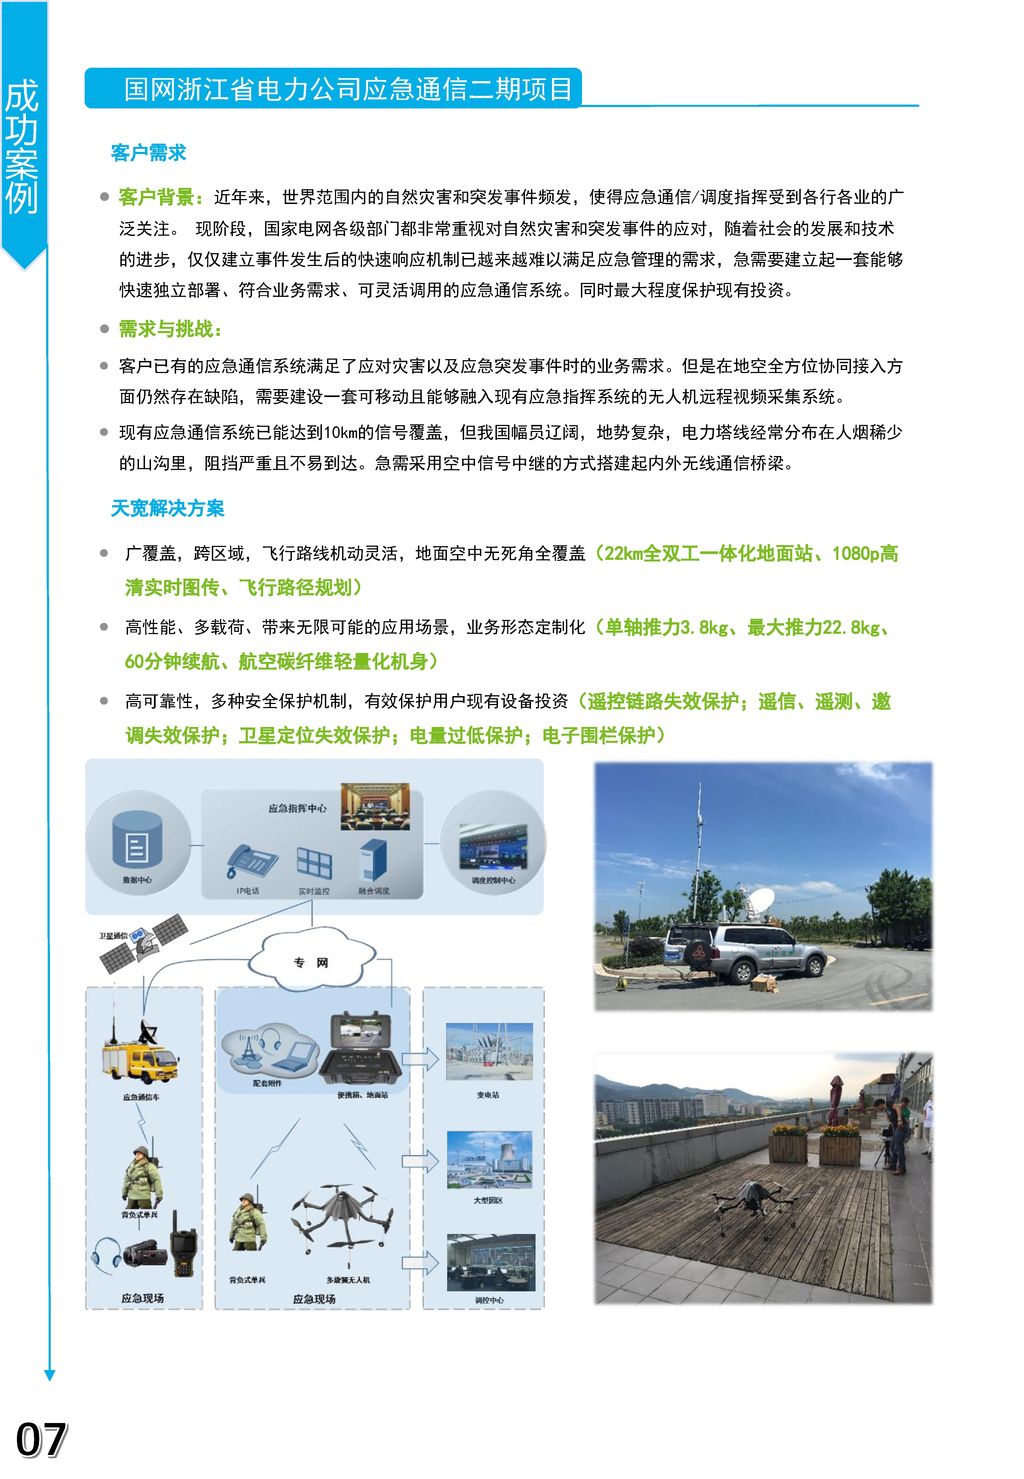 07 成功案例 国网浙江省电力公司应急通信二期项目 客户需求